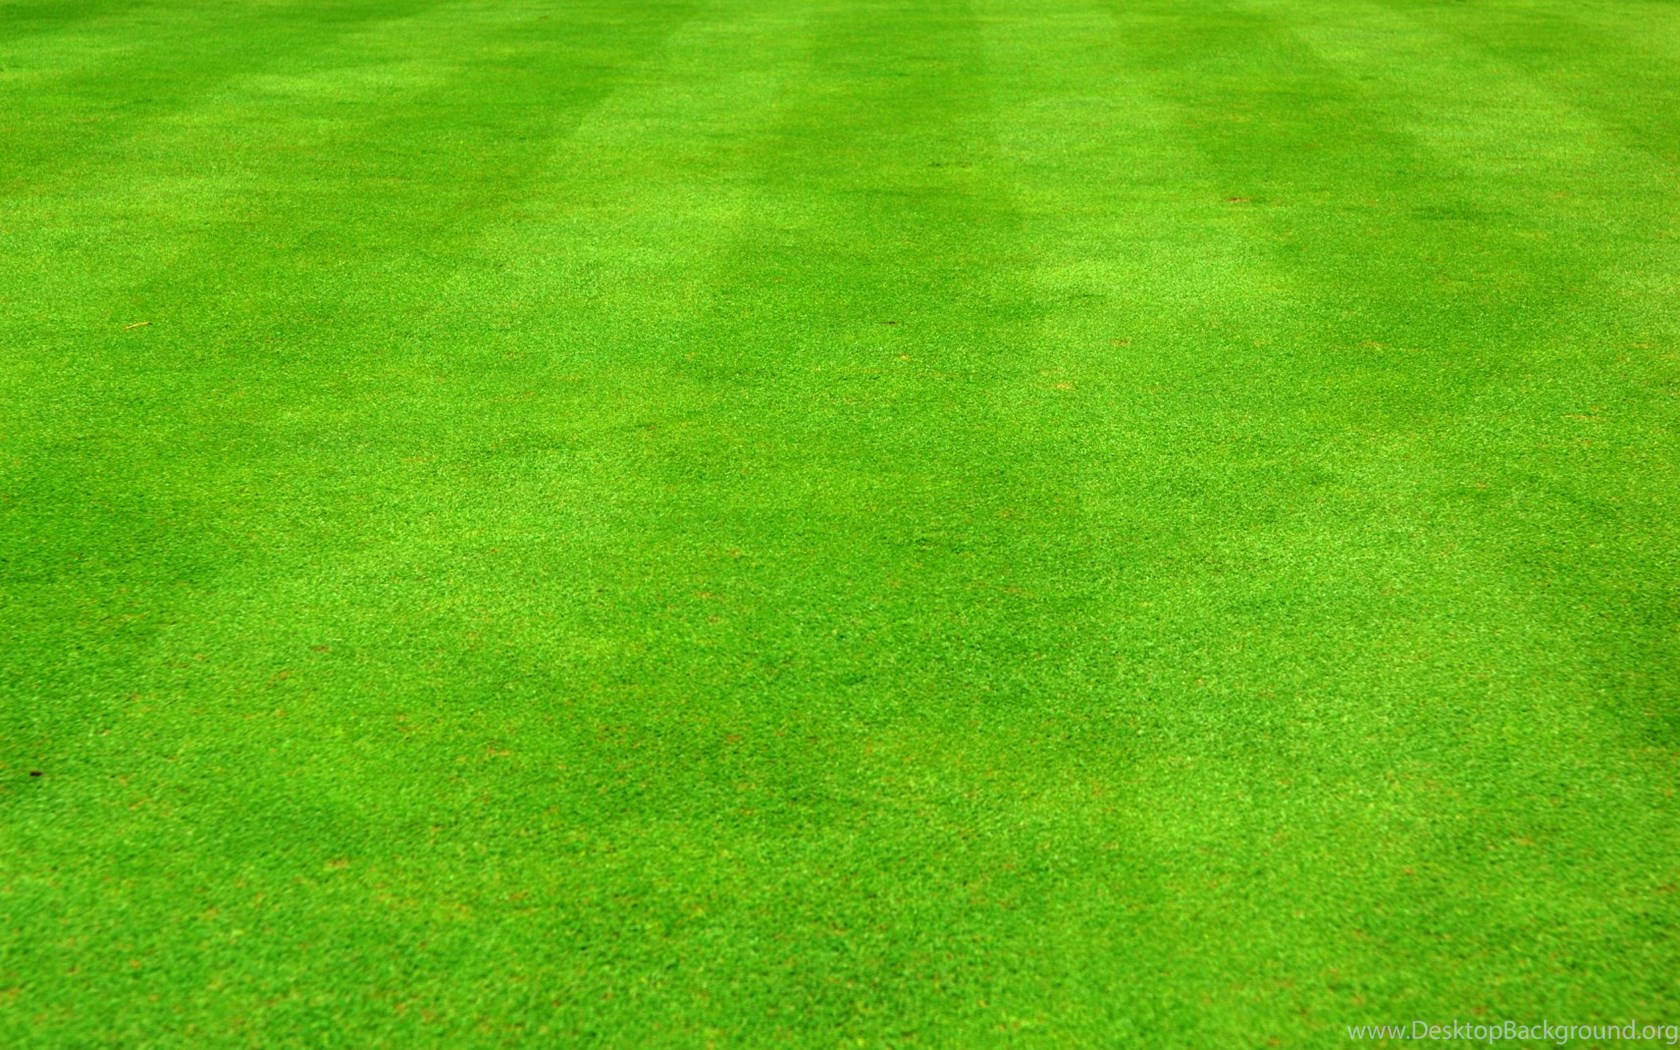 Grass Football Field Wallpaper Desktop Background